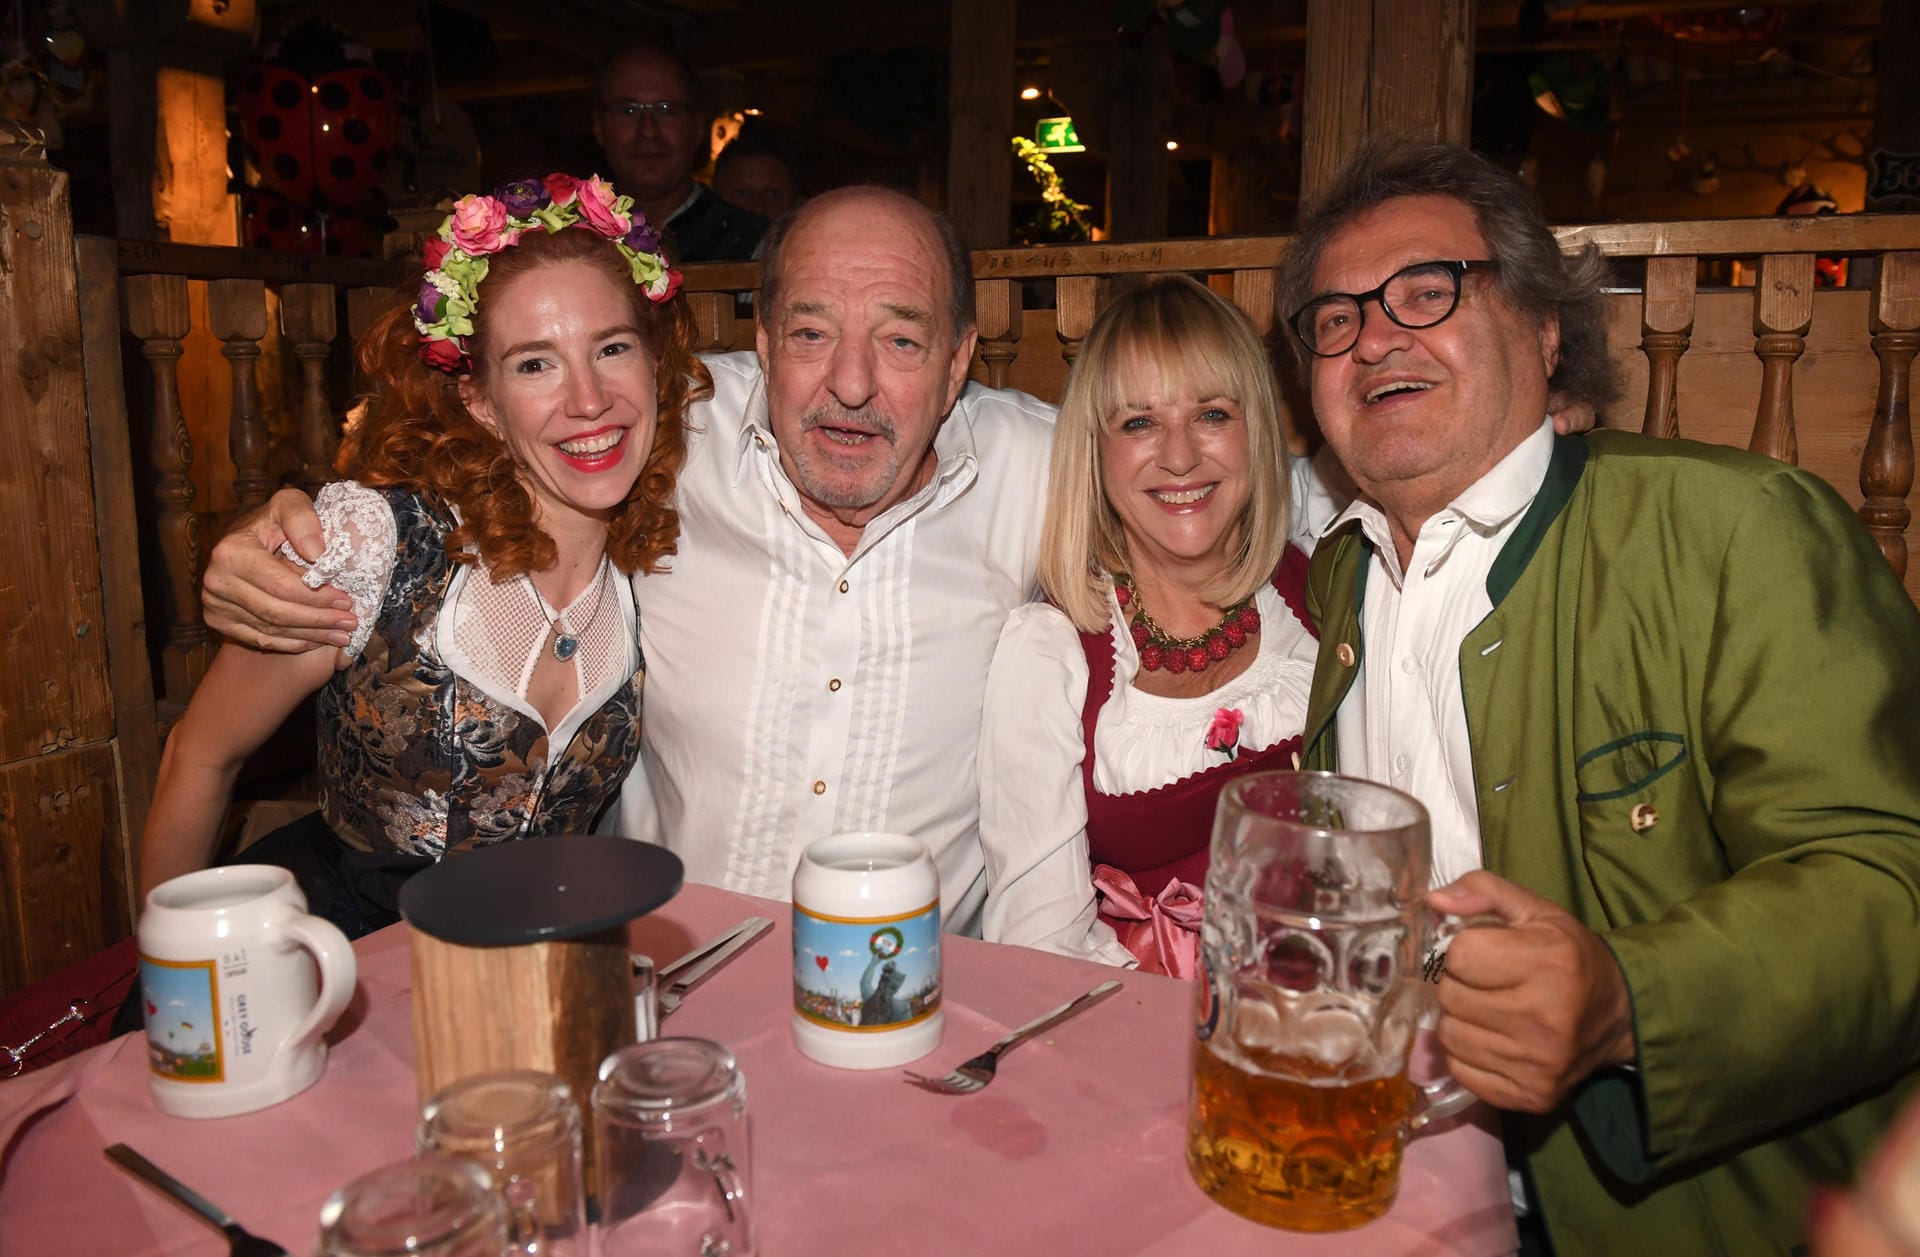 Eine gemütliche Runde: Das Ralf Siegel mit seiner frisch angetrauten Ehefrau Laura zusammen mit Patrizia Riekel und Helmut Markwort.